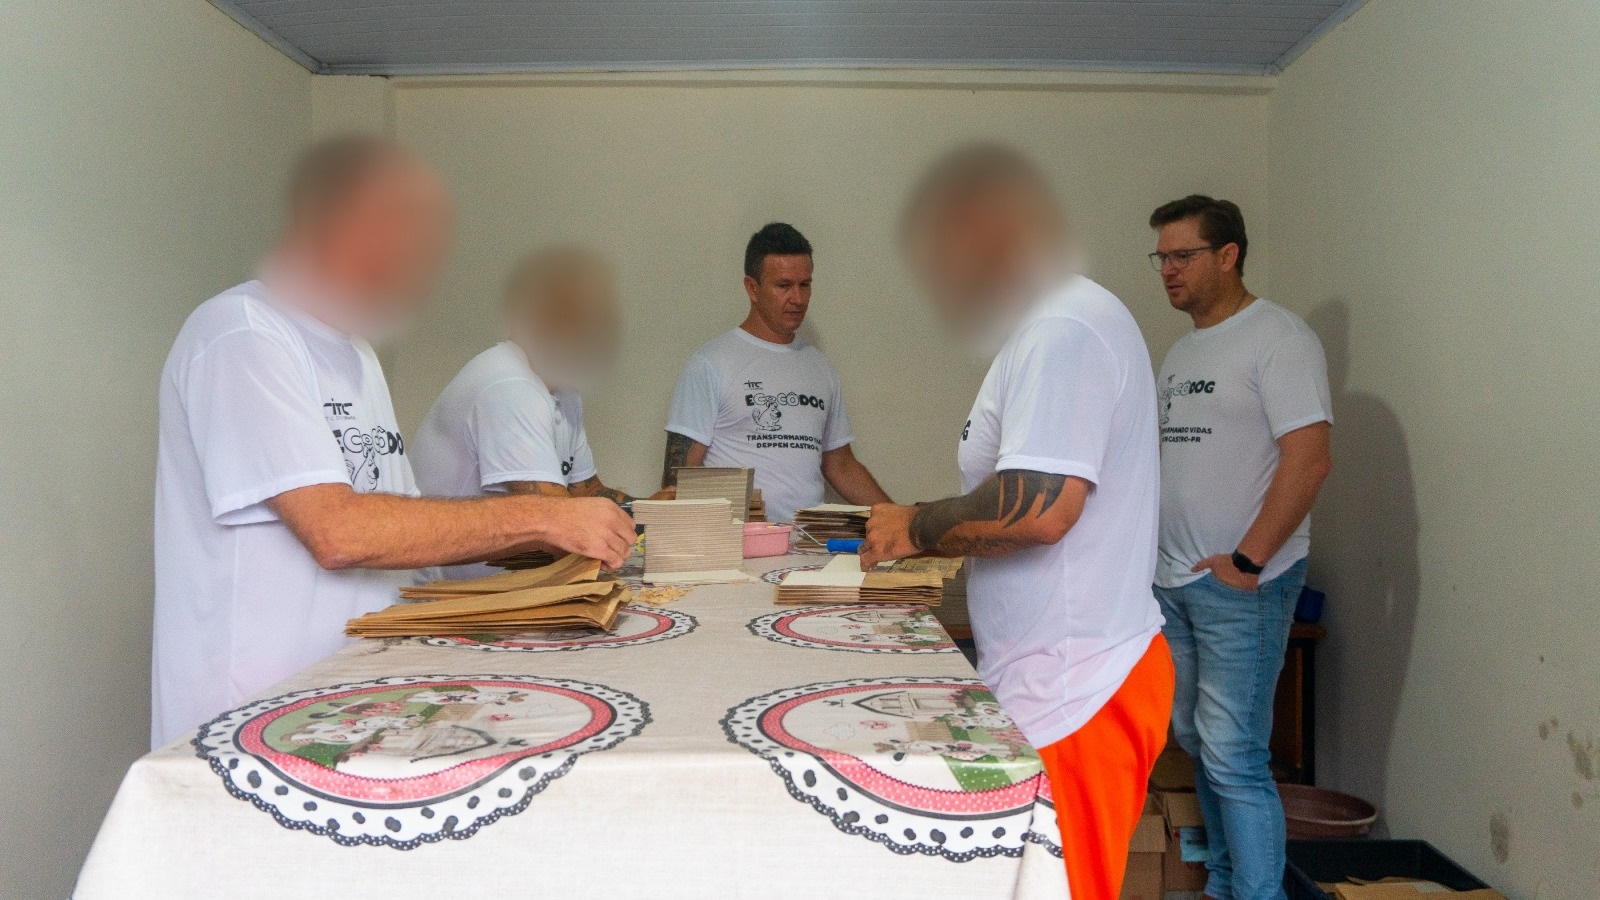 Cadeia de Castro inaugura sala de trabalho para custodiados através de parceria com a ITC do Brasil